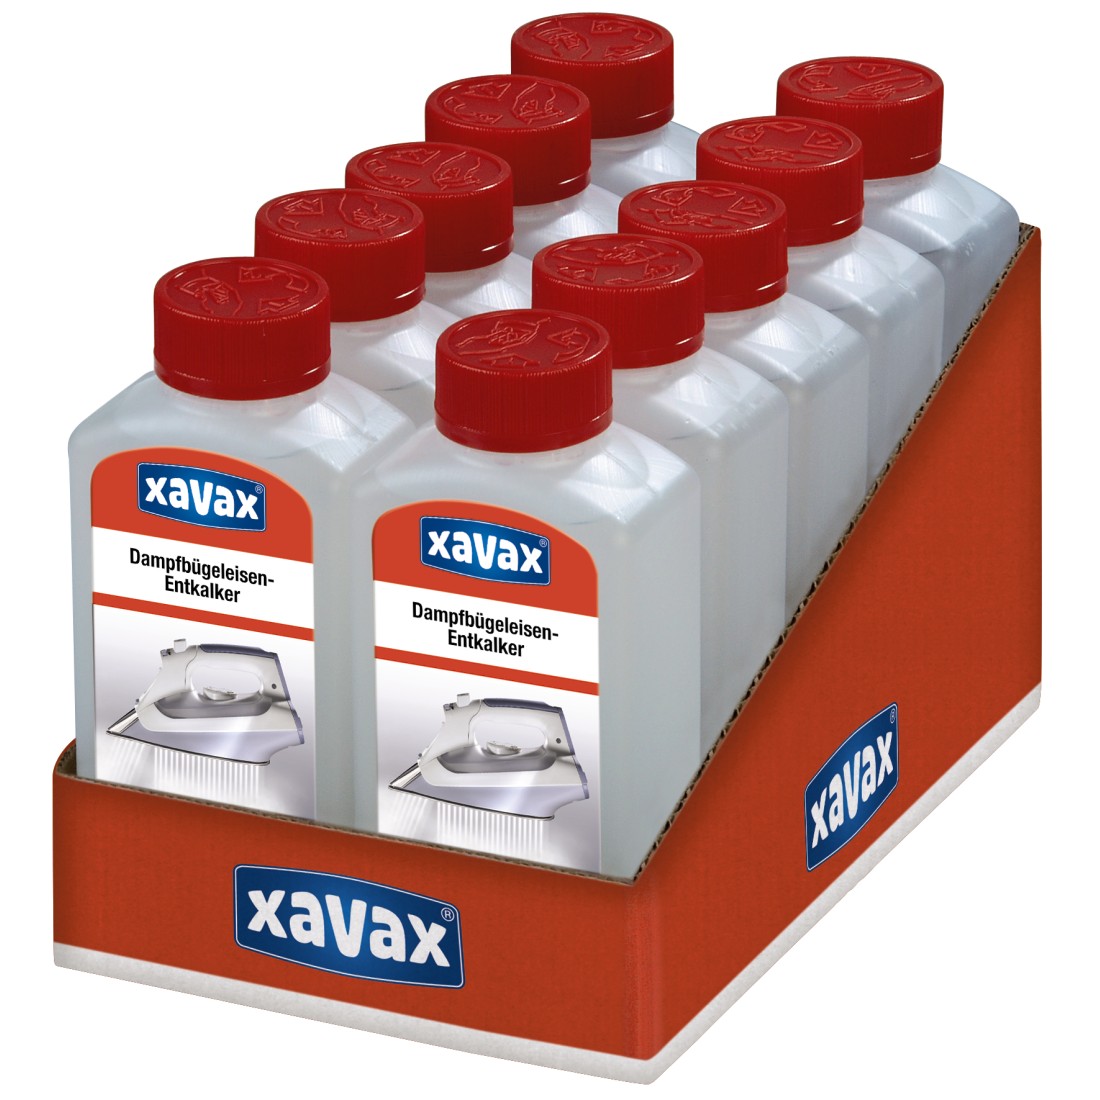 awx5 Druckfähige Anwendung 5 - Xavax, Entkalker für Dampfbügeleisen